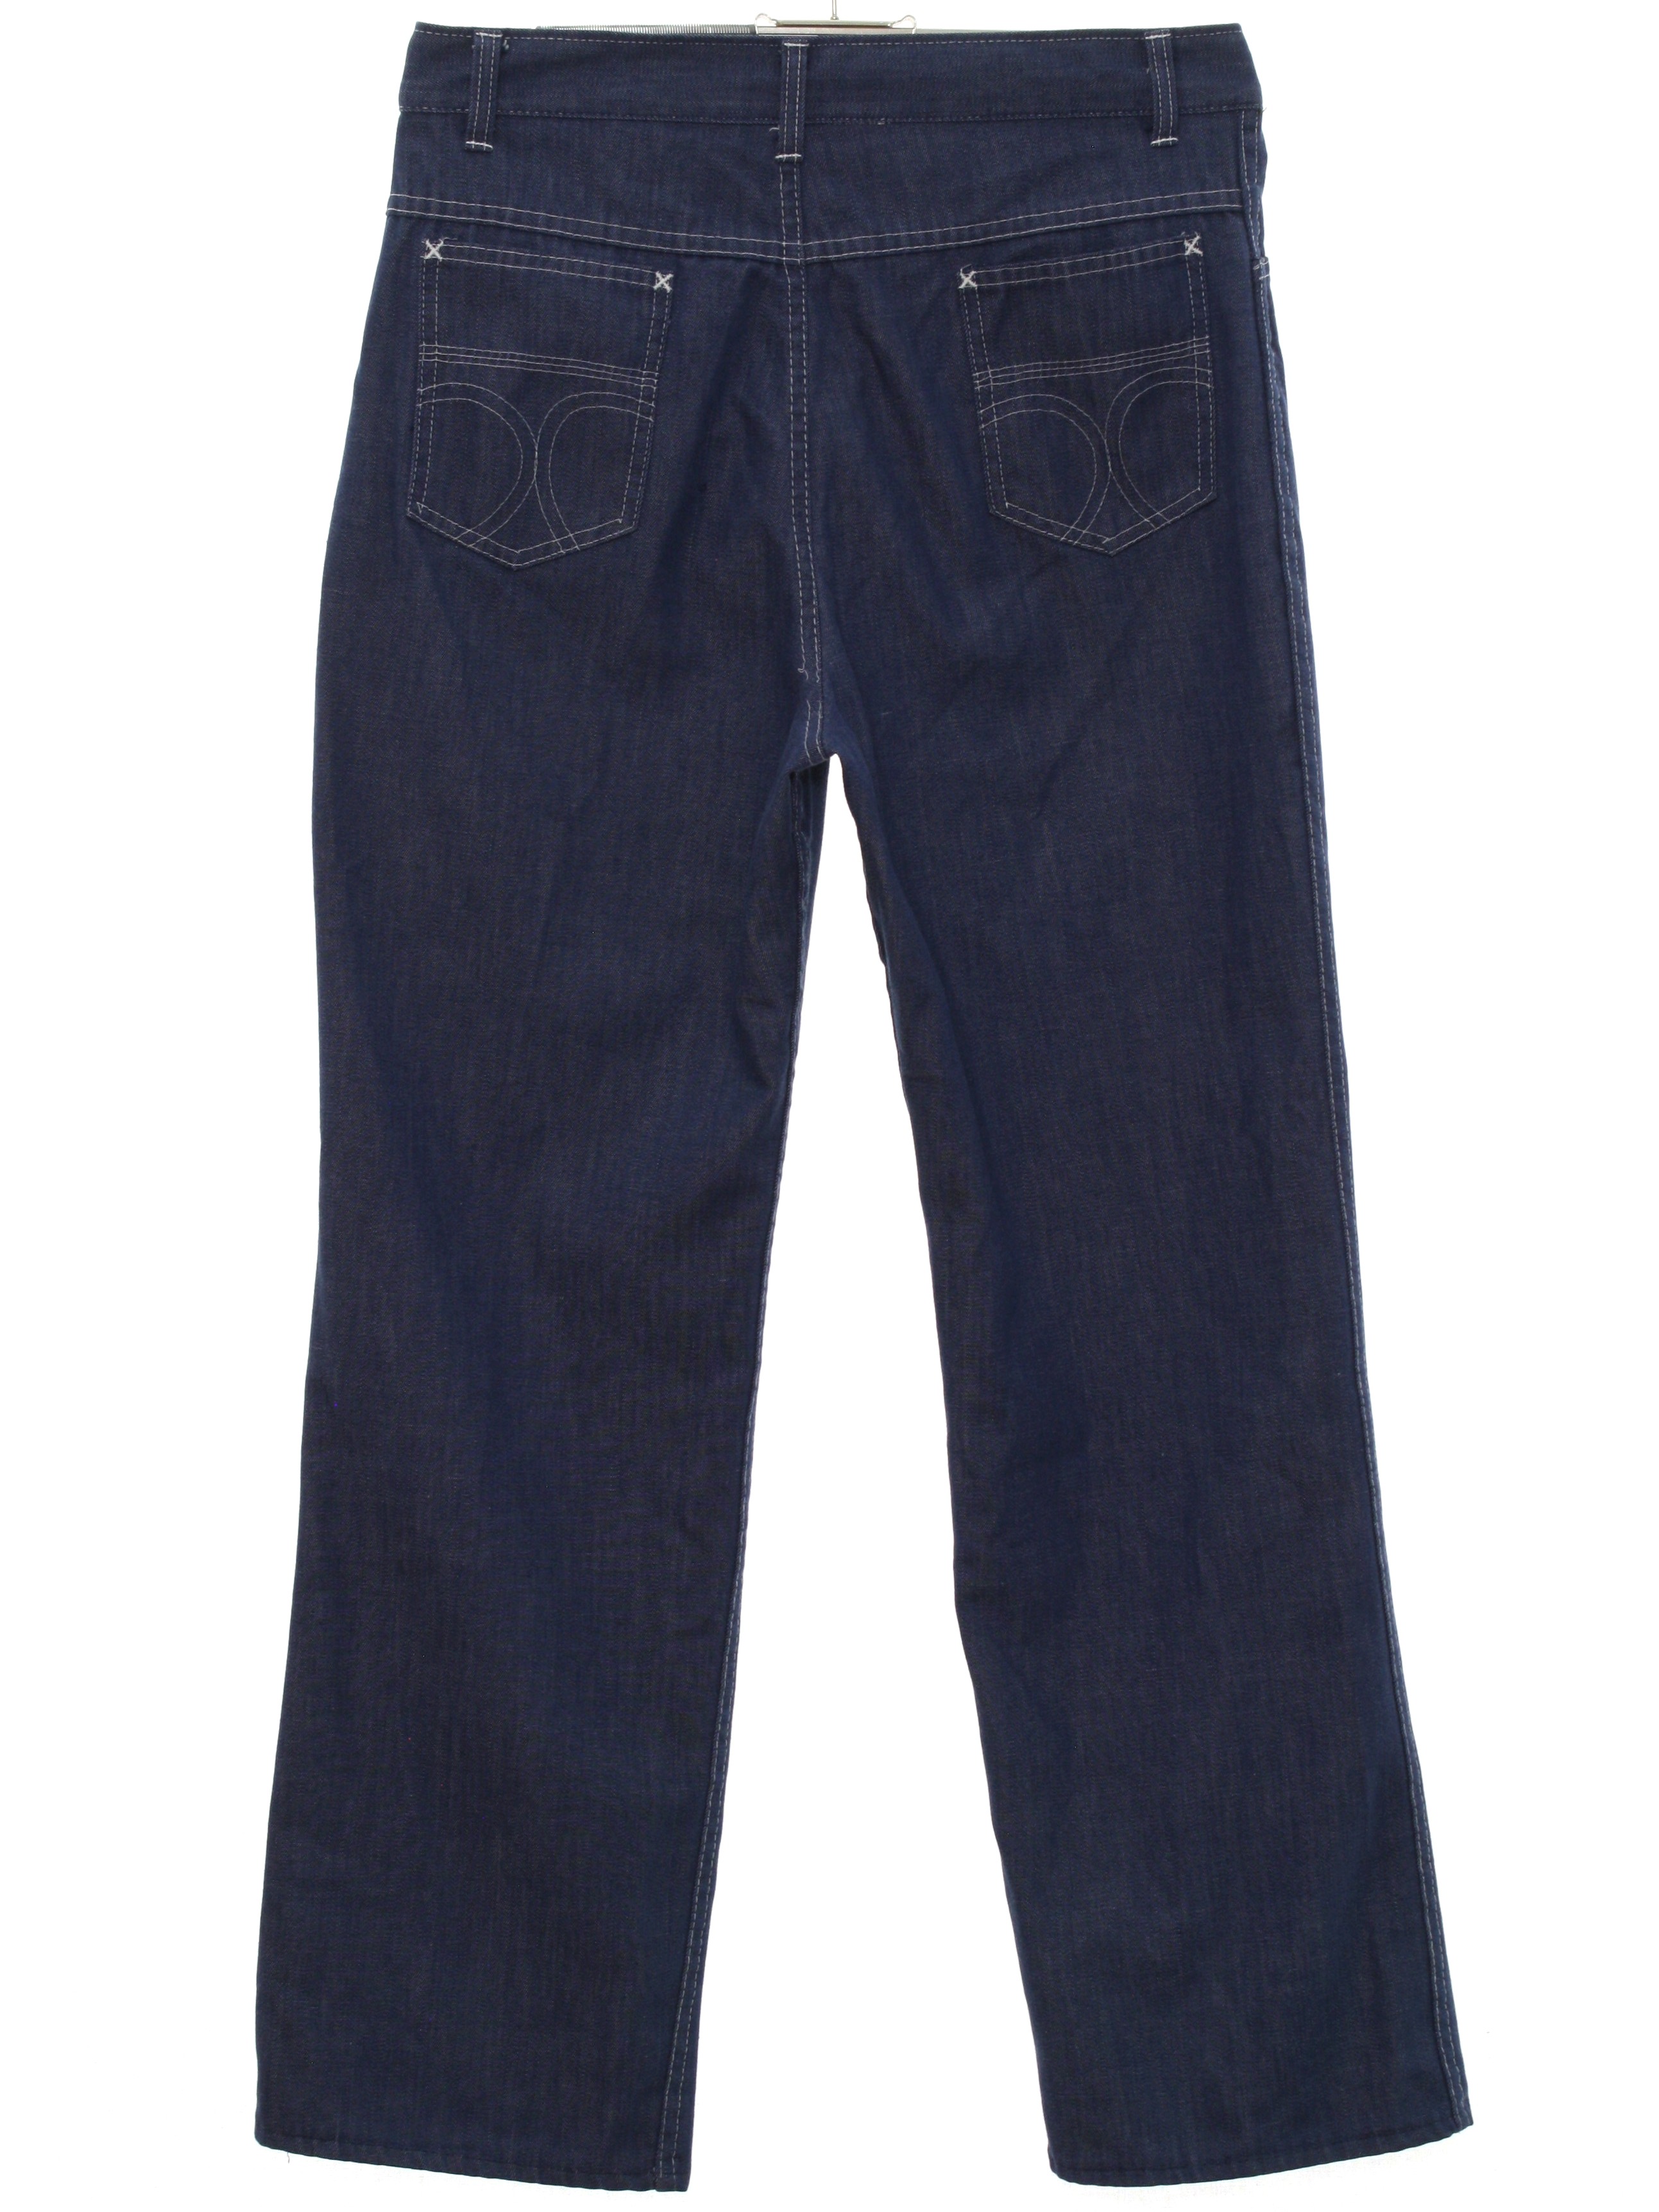 1980's Pants (Missing Label): 80s -Missing Label-- Mens dark blue ...